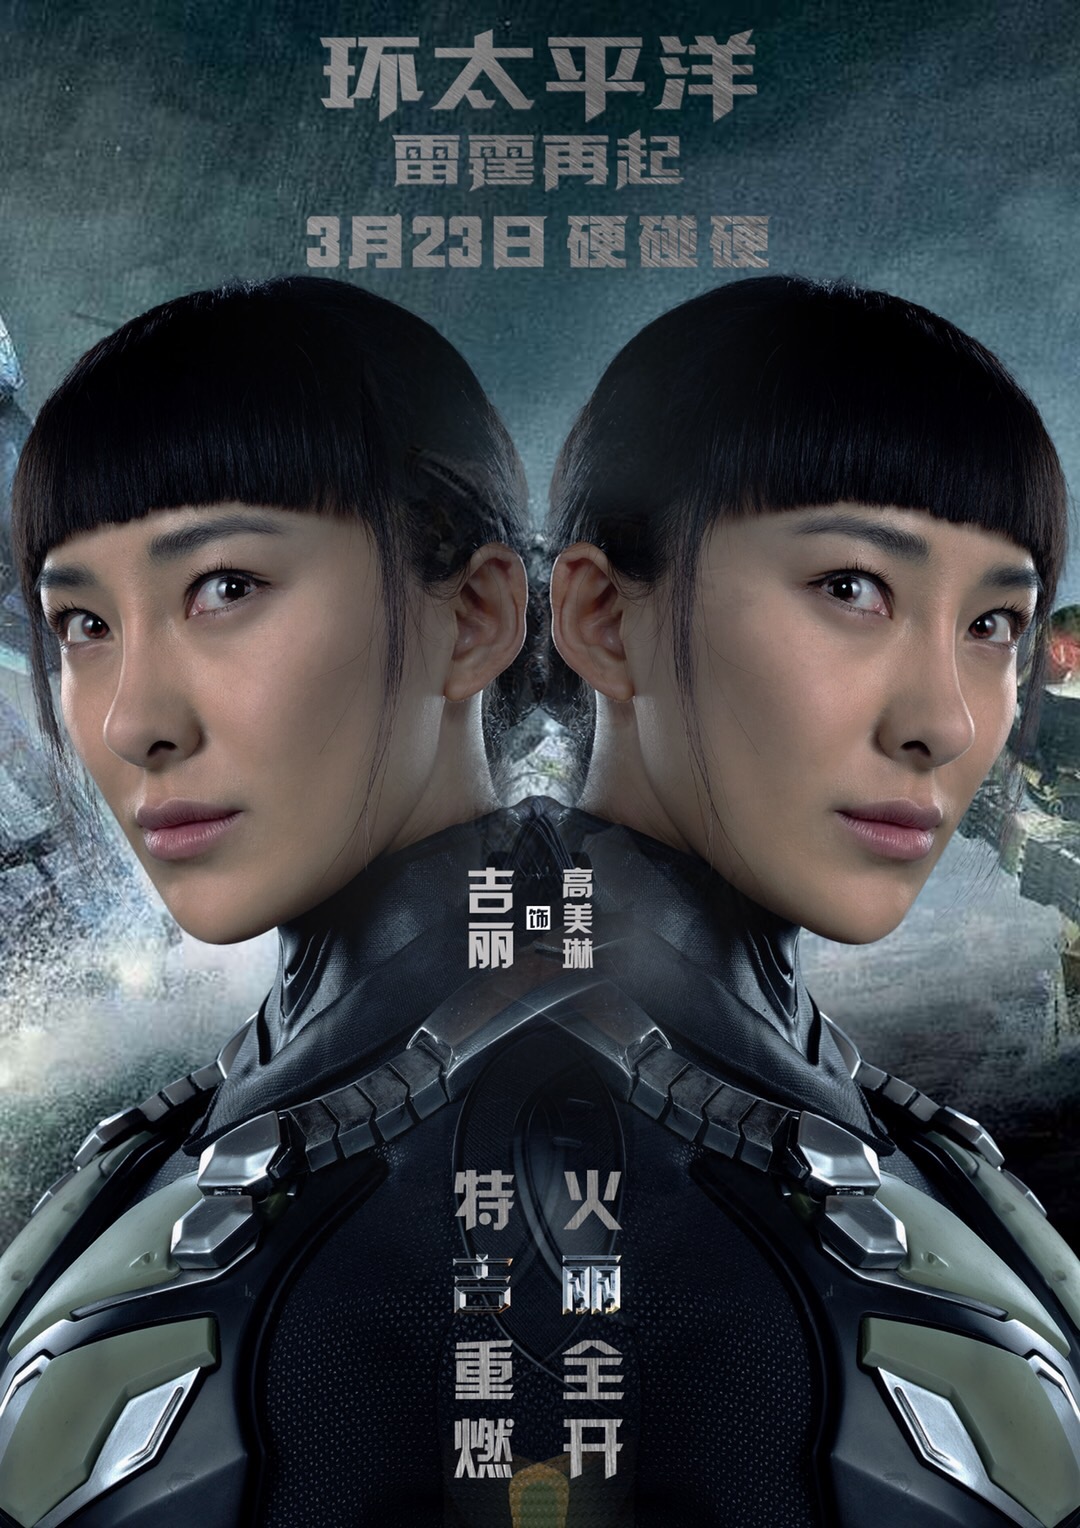 中国女演员吉丽多次征服好莱坞荧屏出演环太平洋2全凭实力